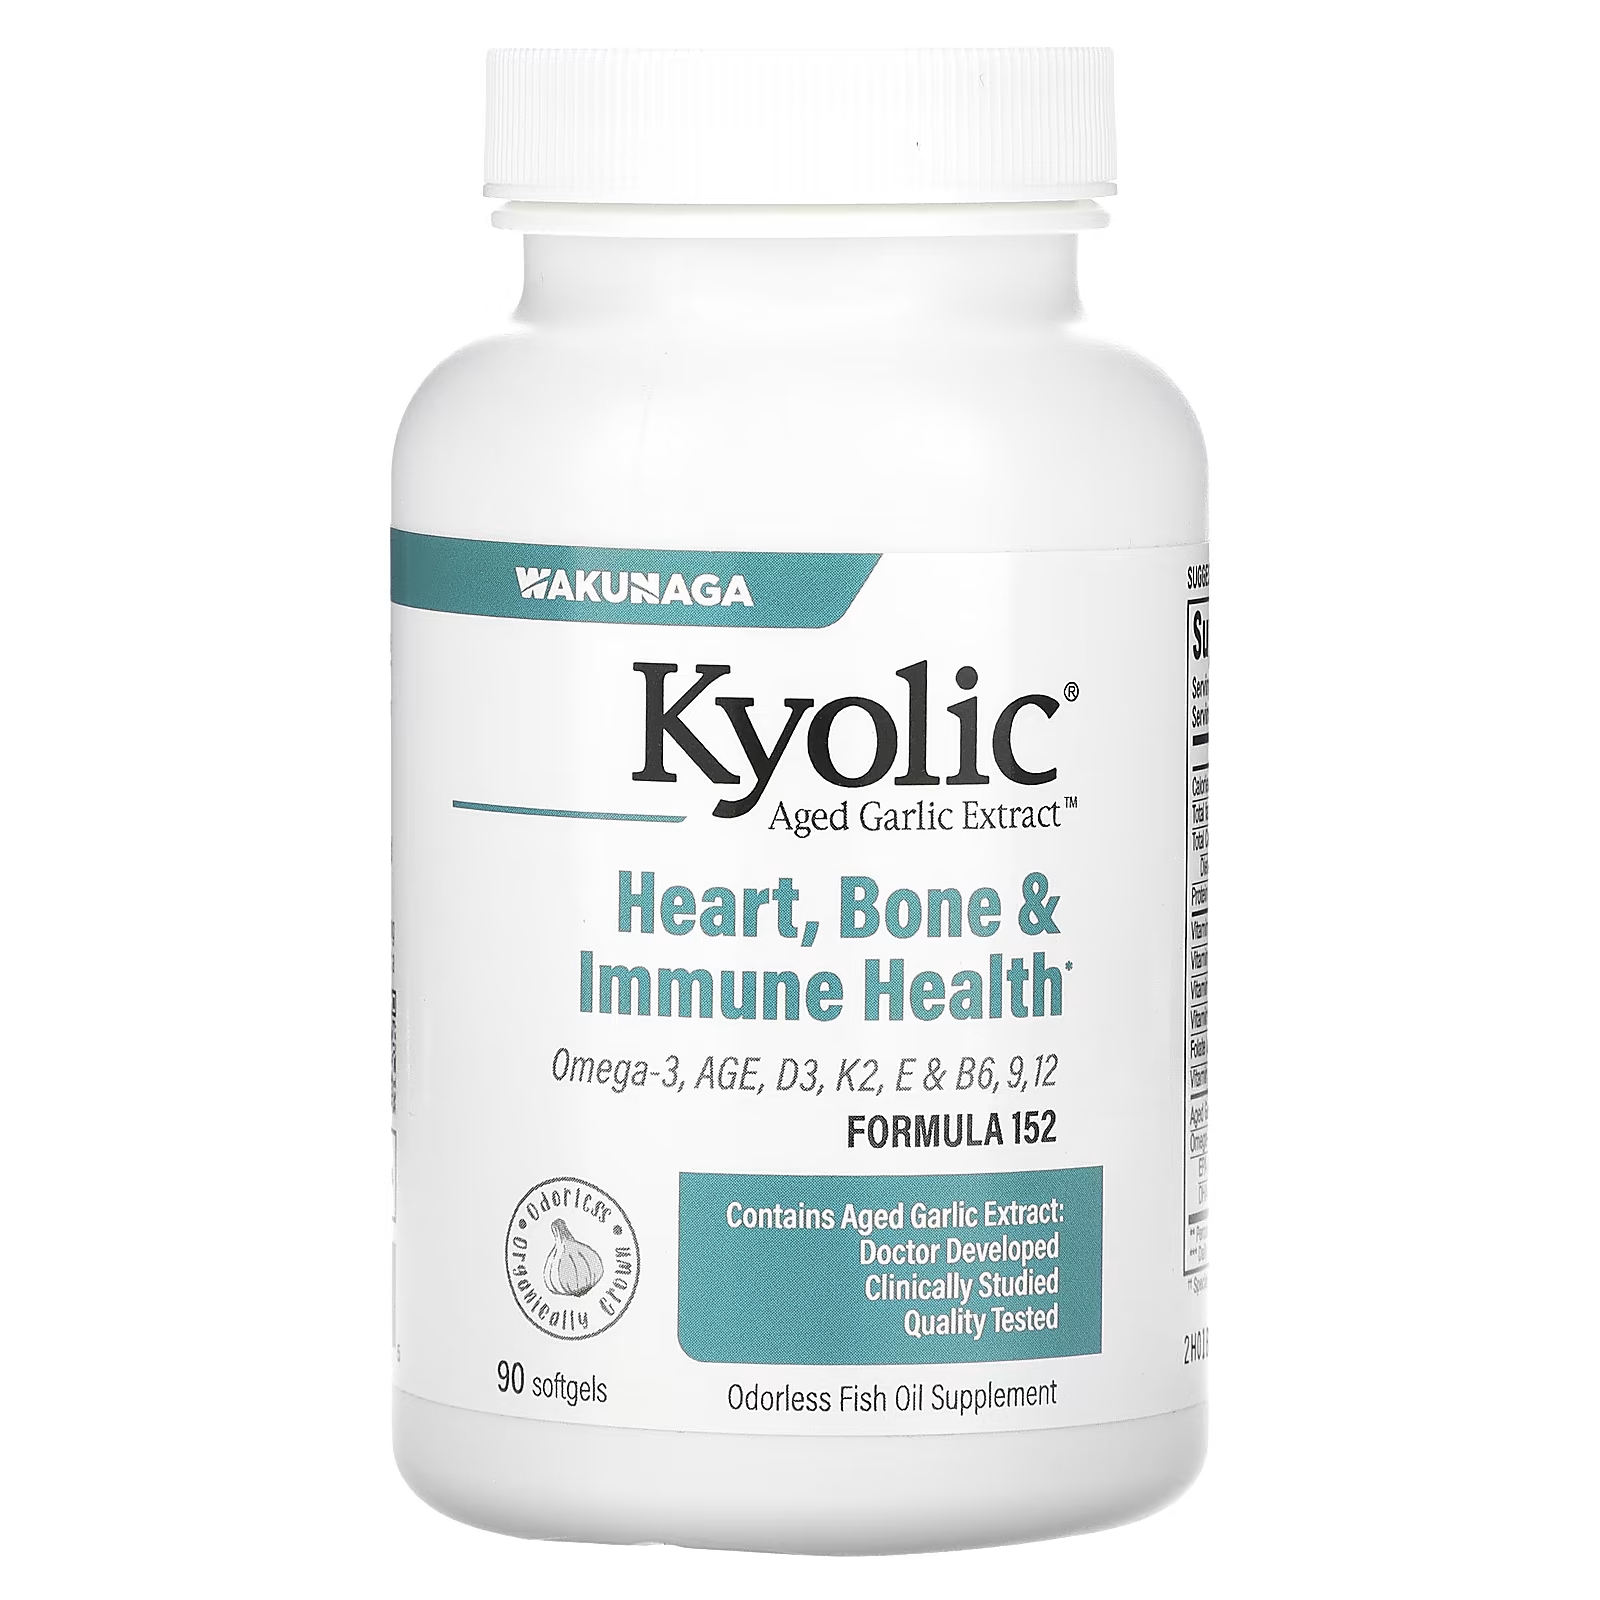 Здоровье костей и иммунитета Kyolic, 90 мягких таблеток kyolic aged garlic extract выдержанный экстракт чеснока для здорового артериального давления формула 109 80 капсул